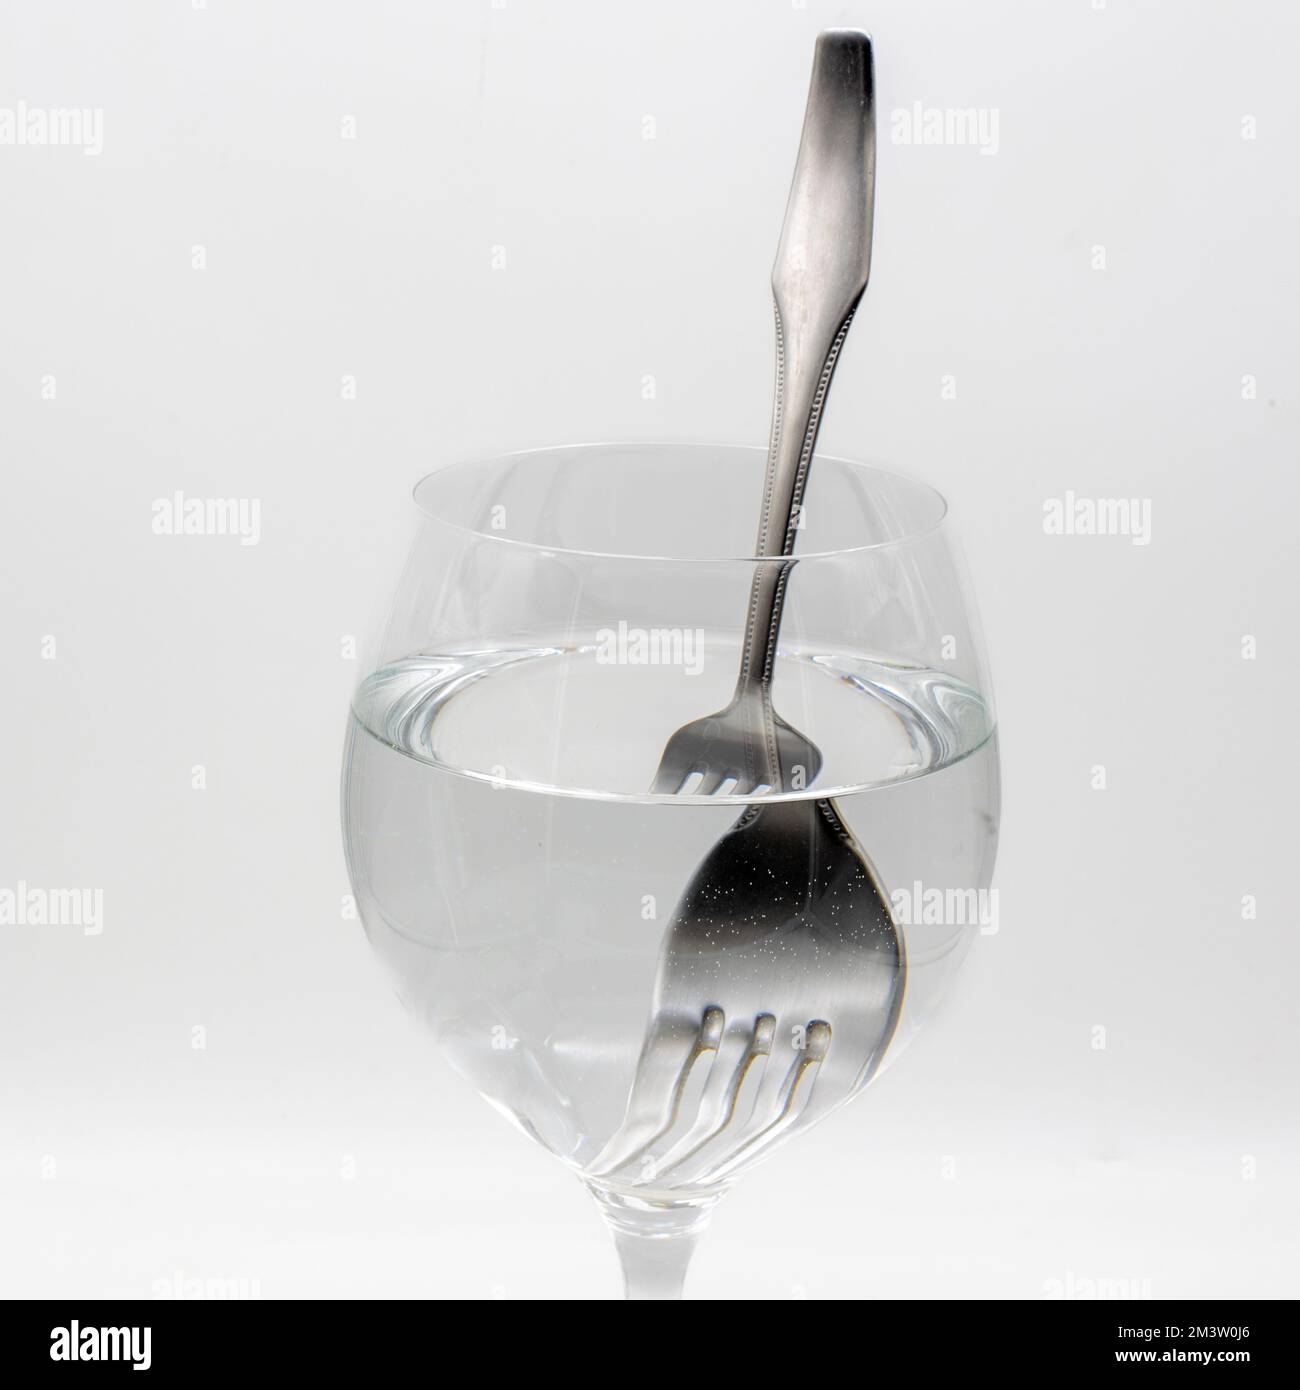 Vista de un tenedor distorsionado dentro de una vaso lleno de agua, demostrando la refracción de la luz Stock Photo